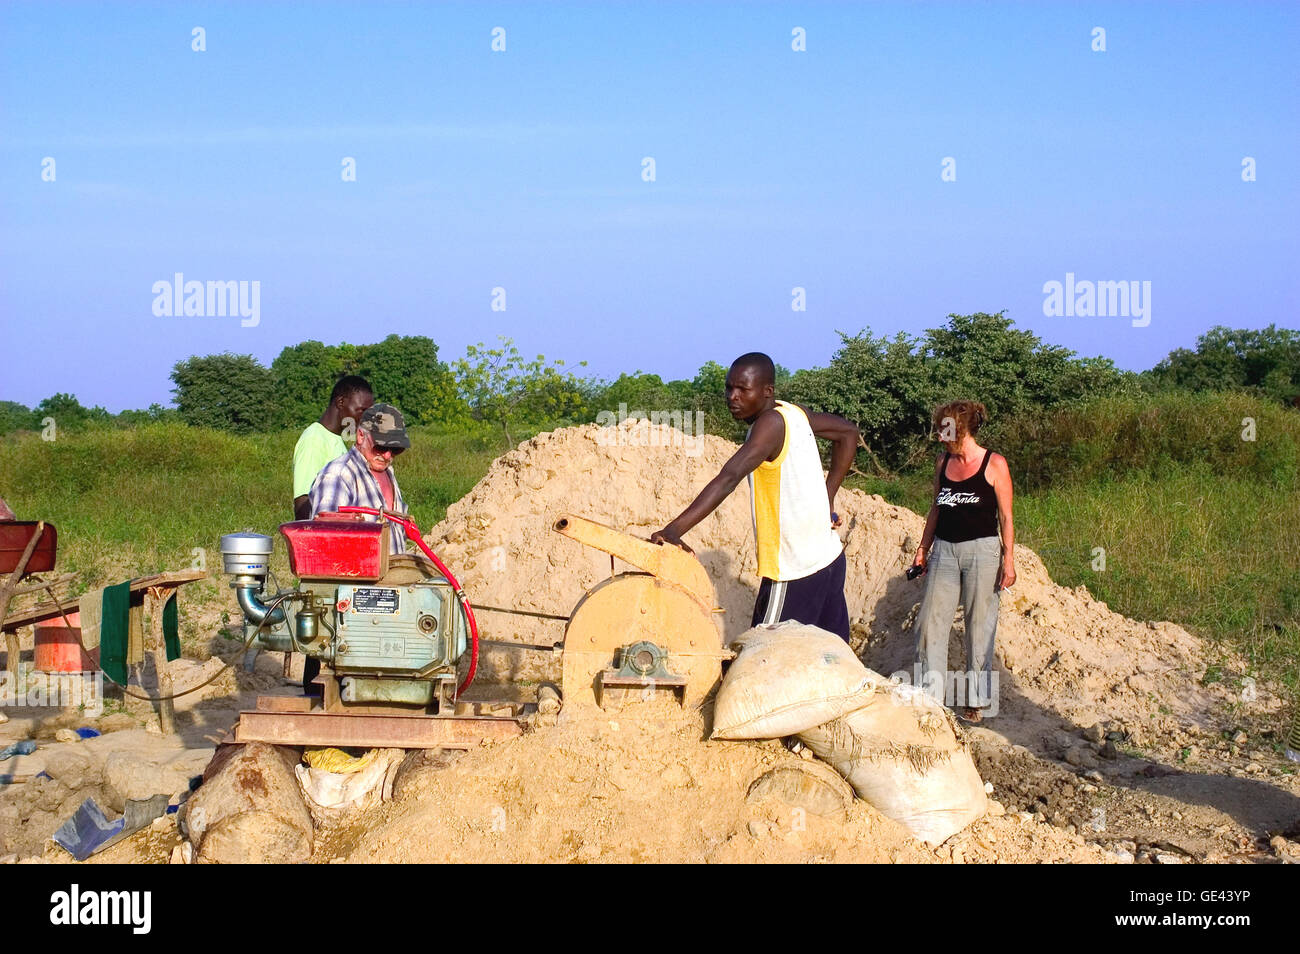 Chercheur d'or française est intéressée par les outils utilisés par les mineurs africains au Burkina Faso Banque D'Images